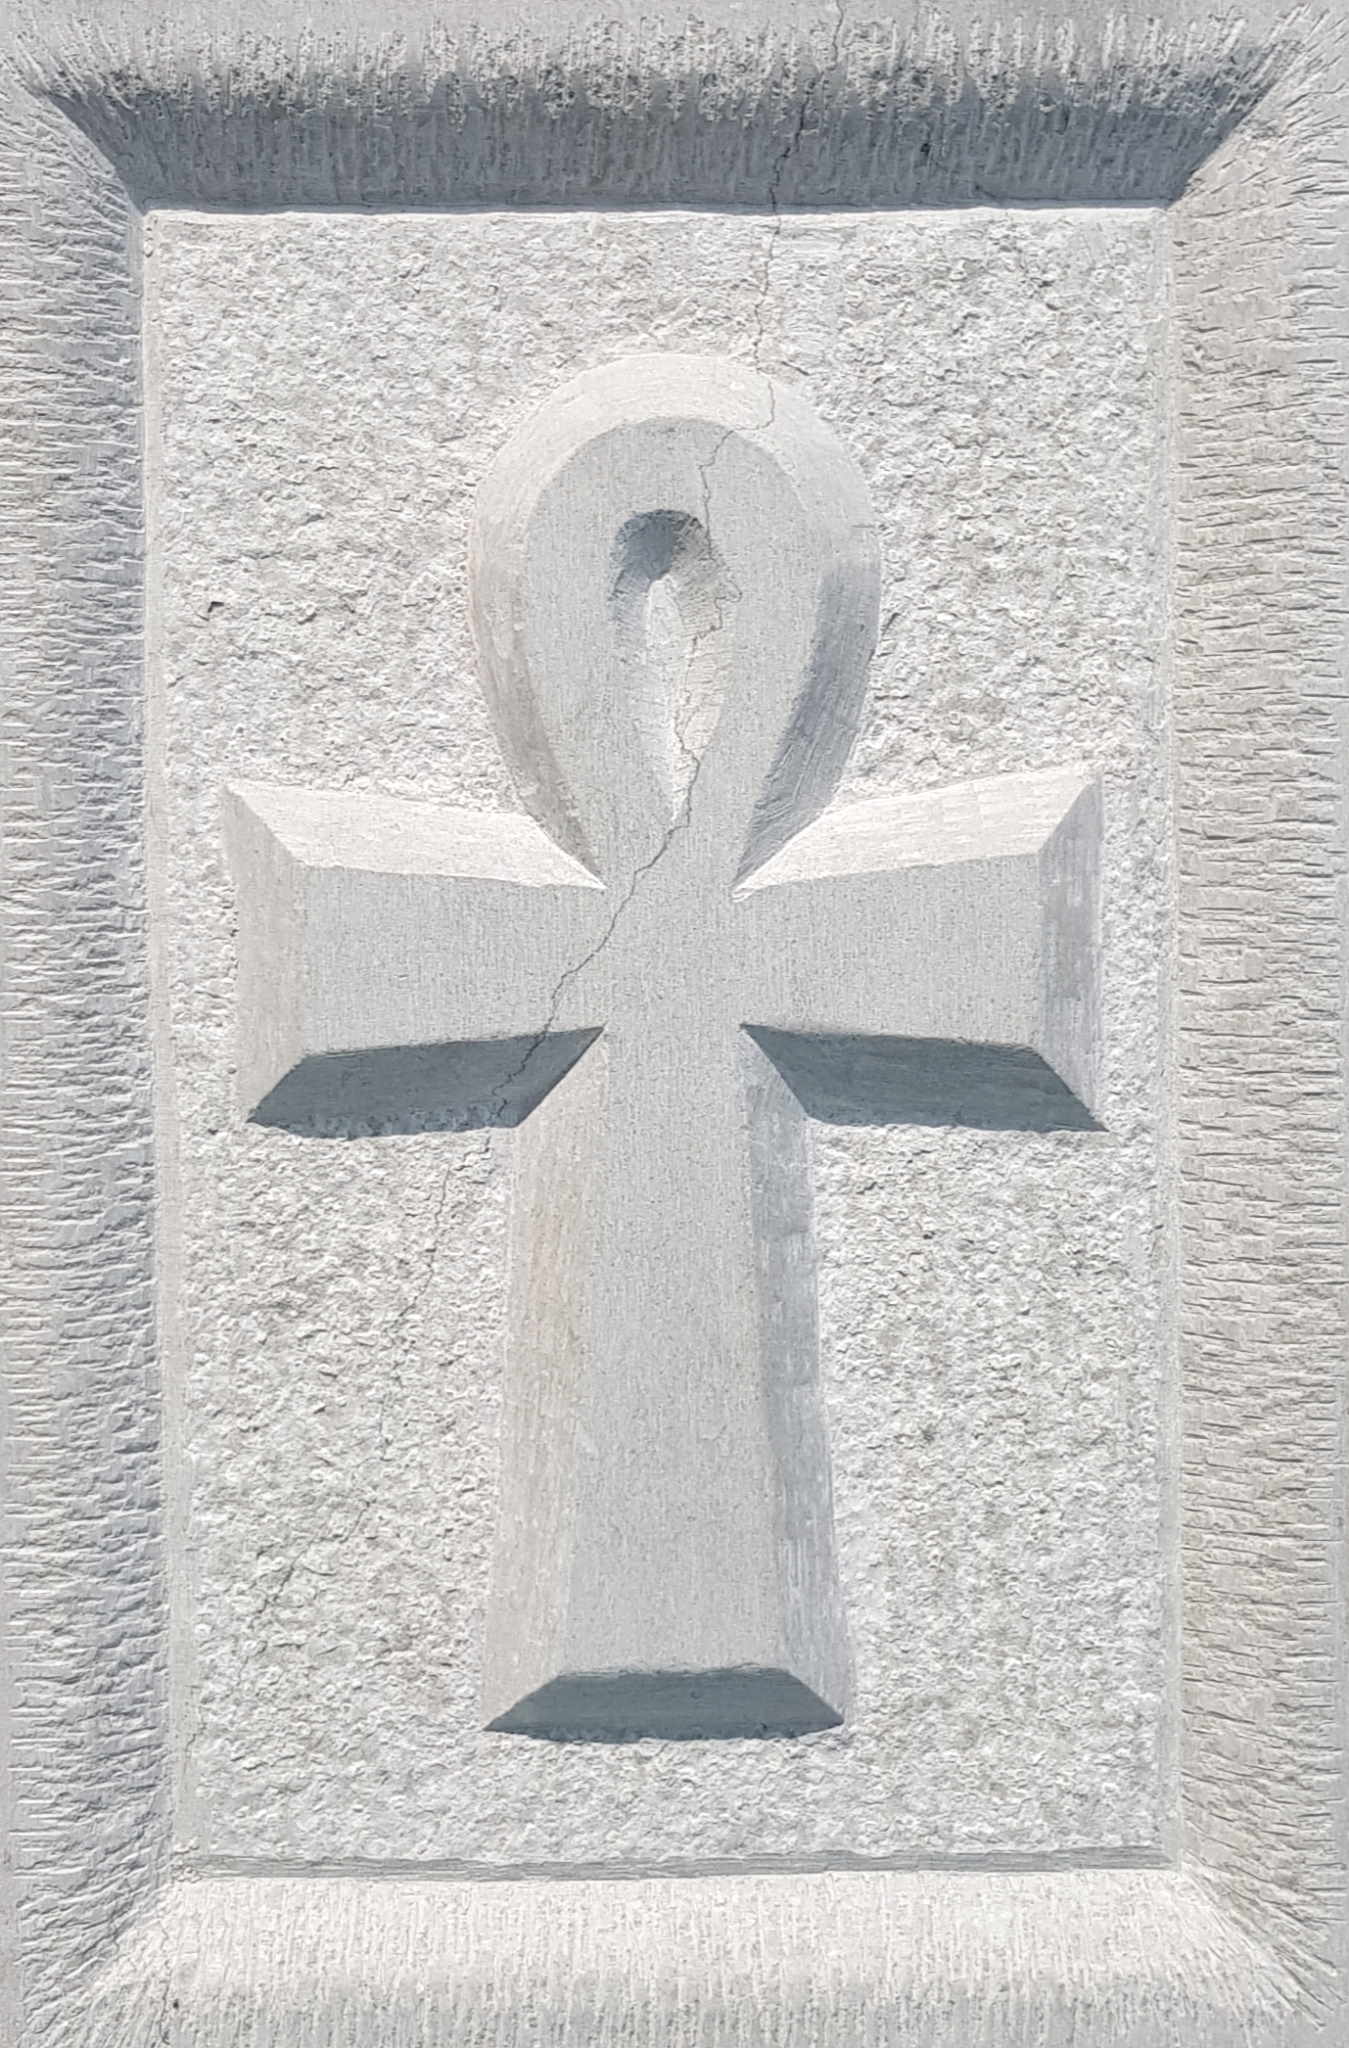 Croce Ankh, o Chiave di Vita, dell'Antico Egitto.